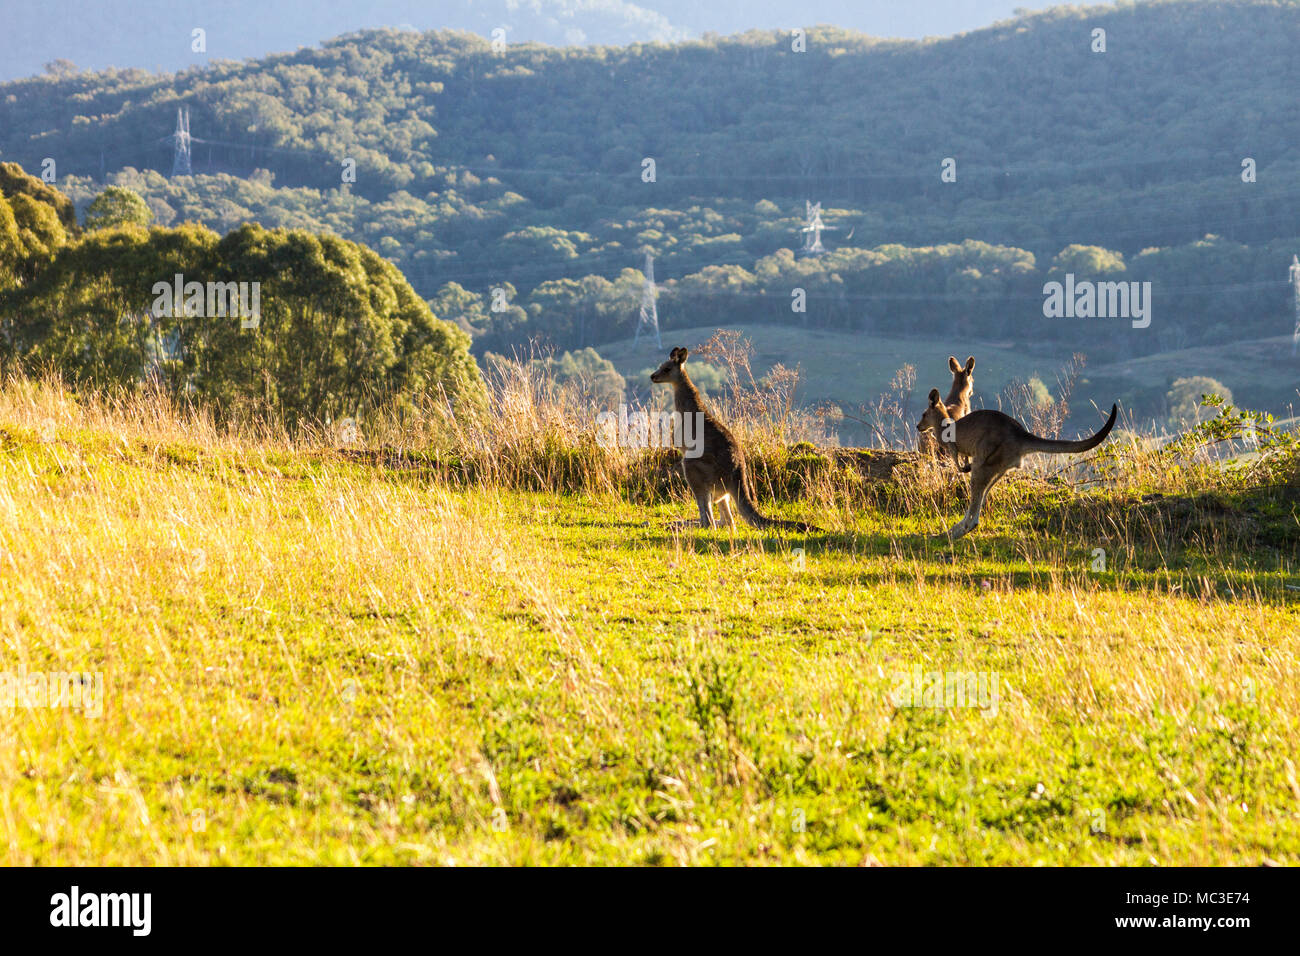 Sauts de kangourous sur le bord d'une montagne, éclairé par le soleil avec une autre montagne en arrière-plan Banque D'Images